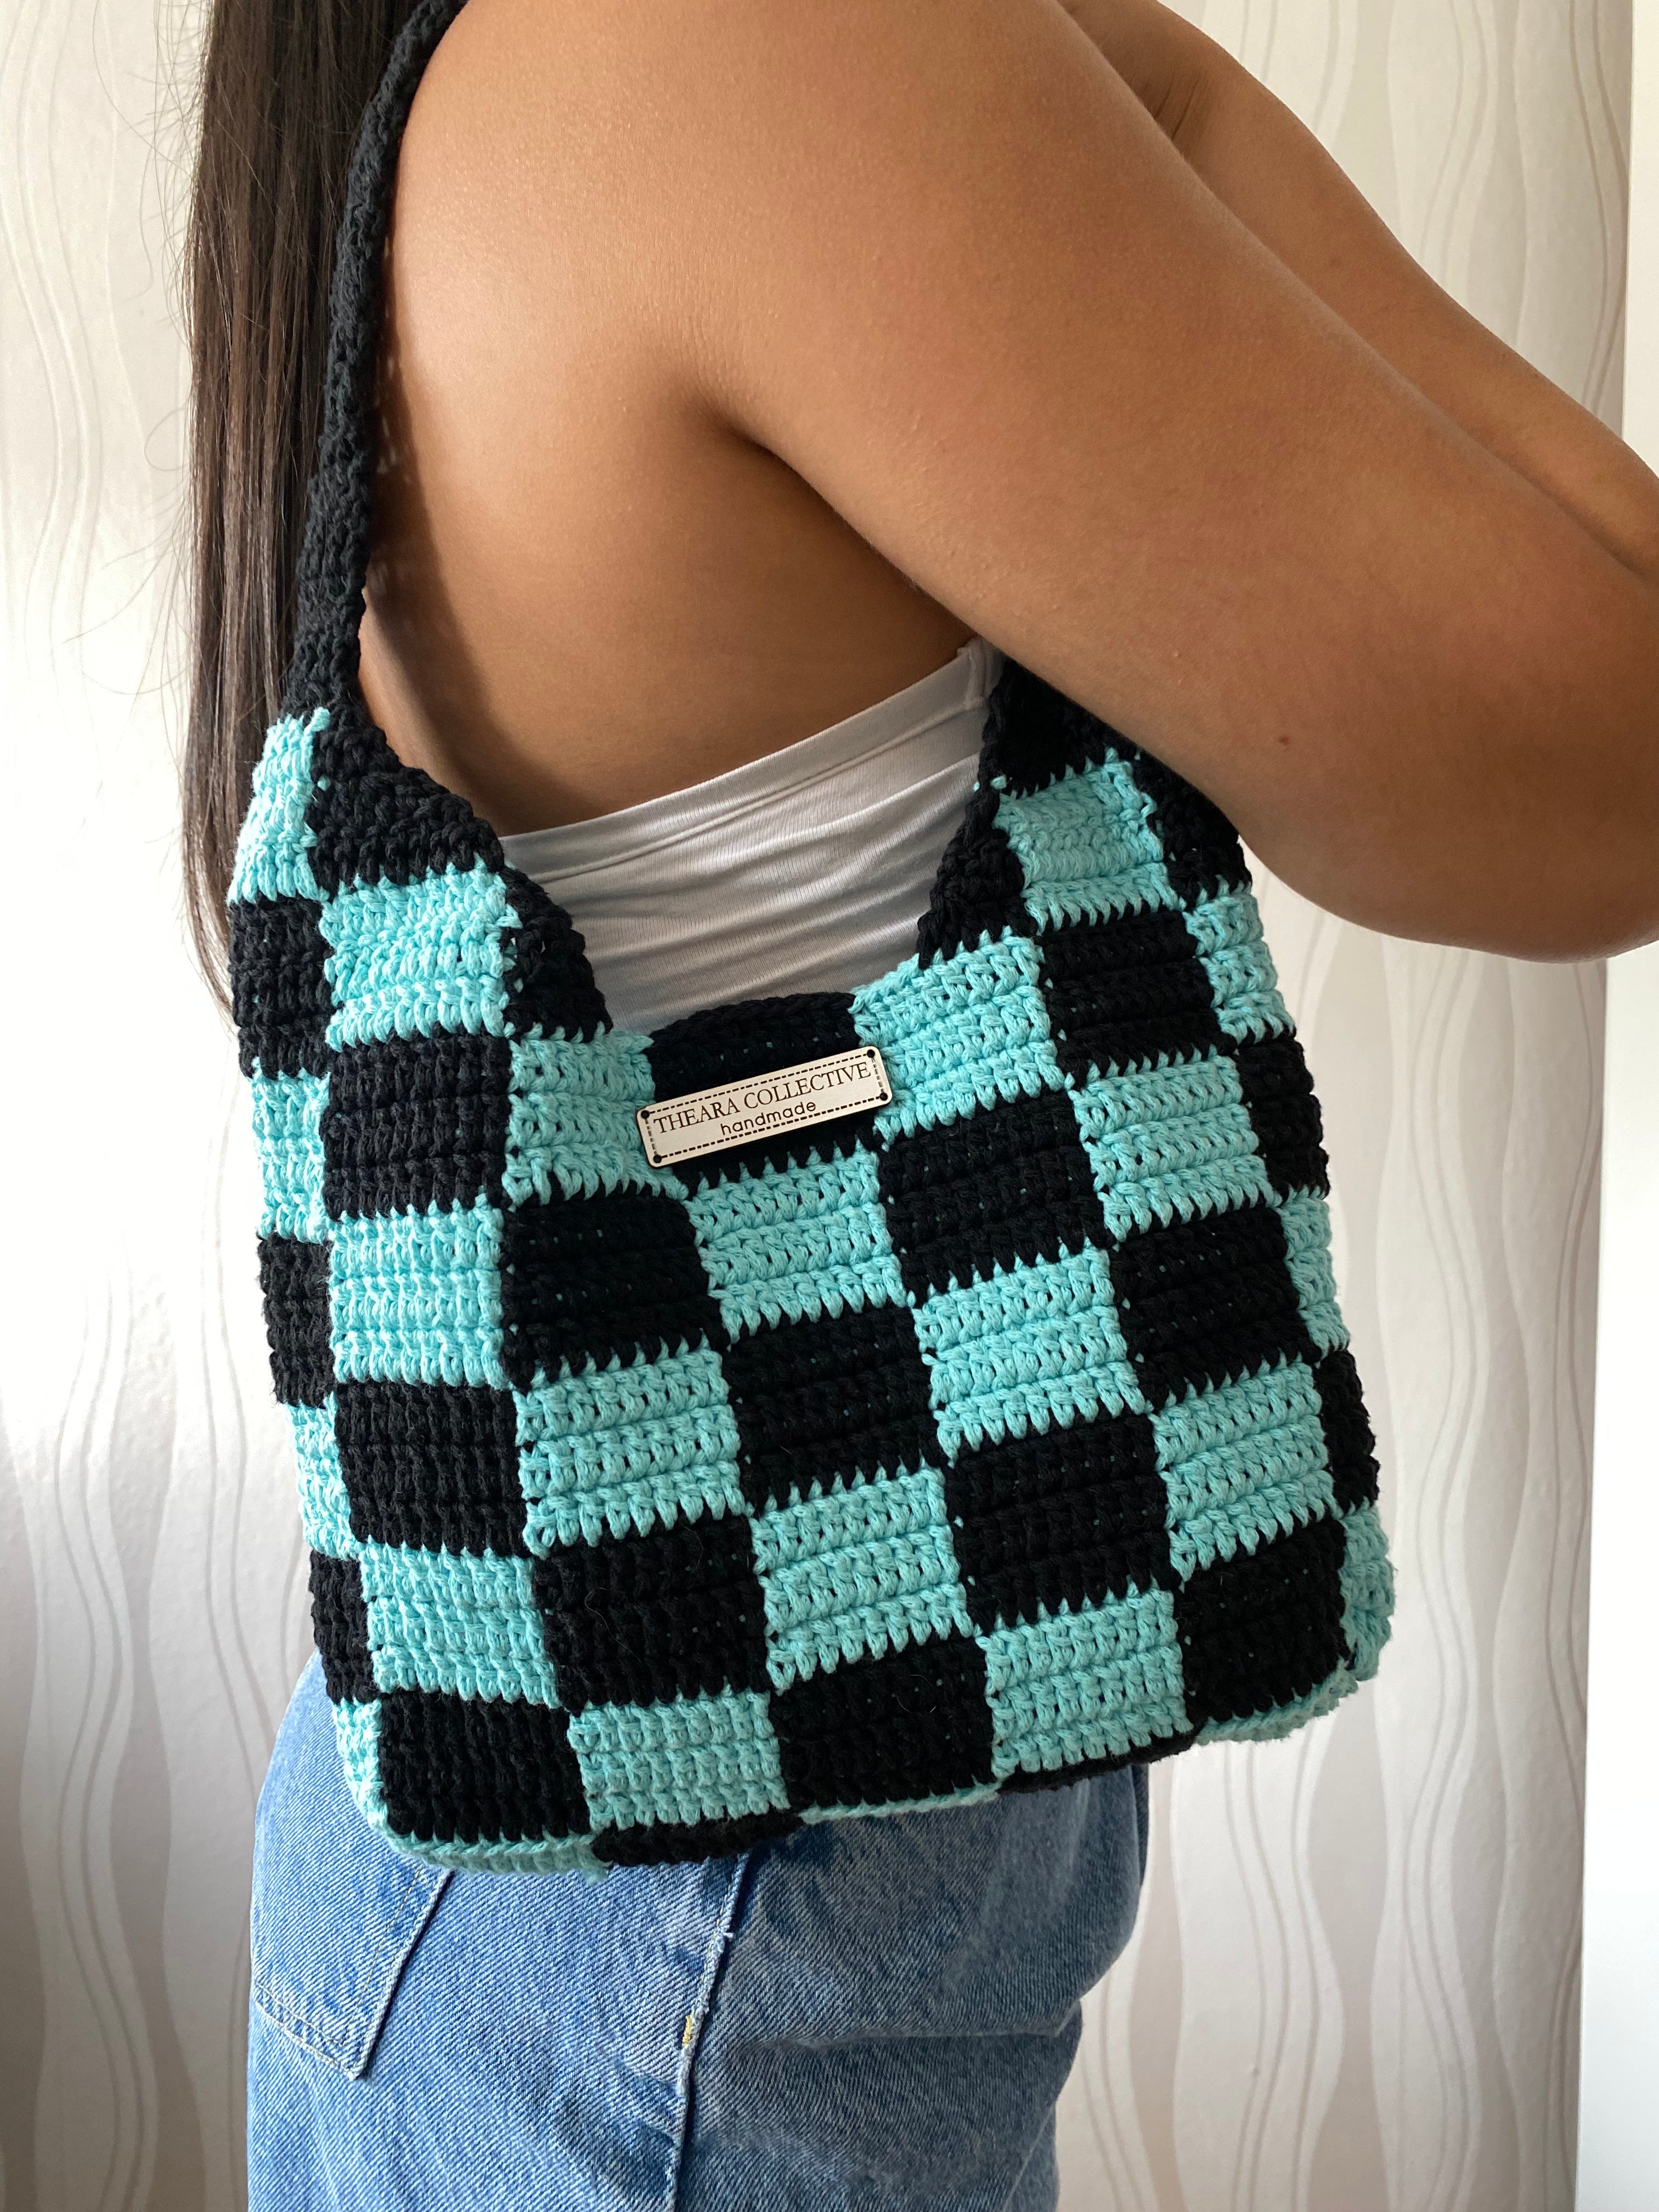 Checkerboard Shoulder Bag - Theara Collective Handmade - Theara Collective